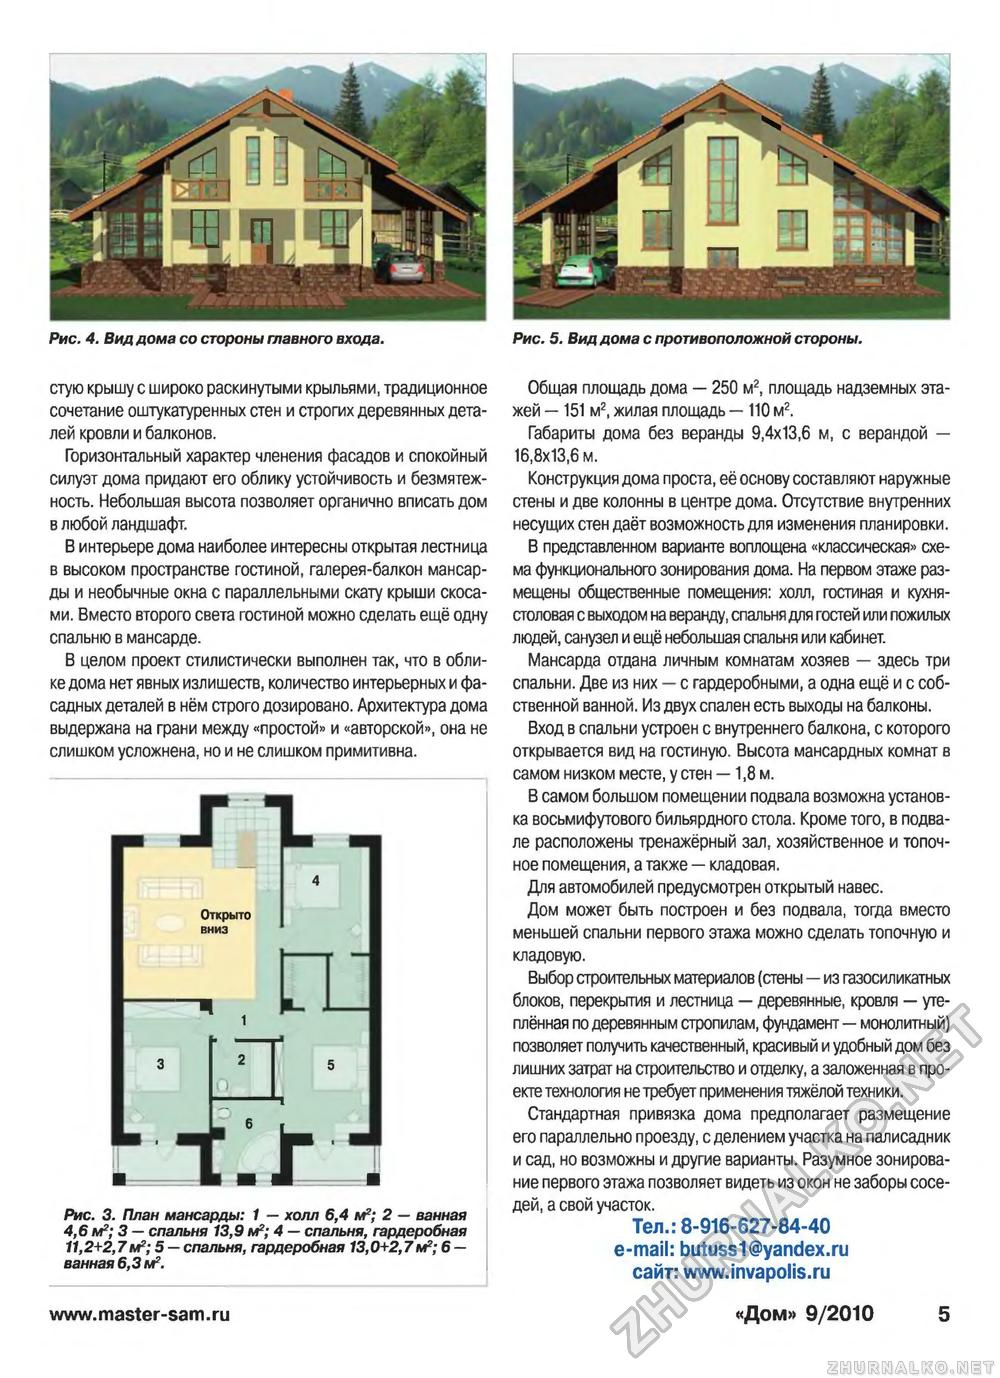 Дом 2010-09, страница 5